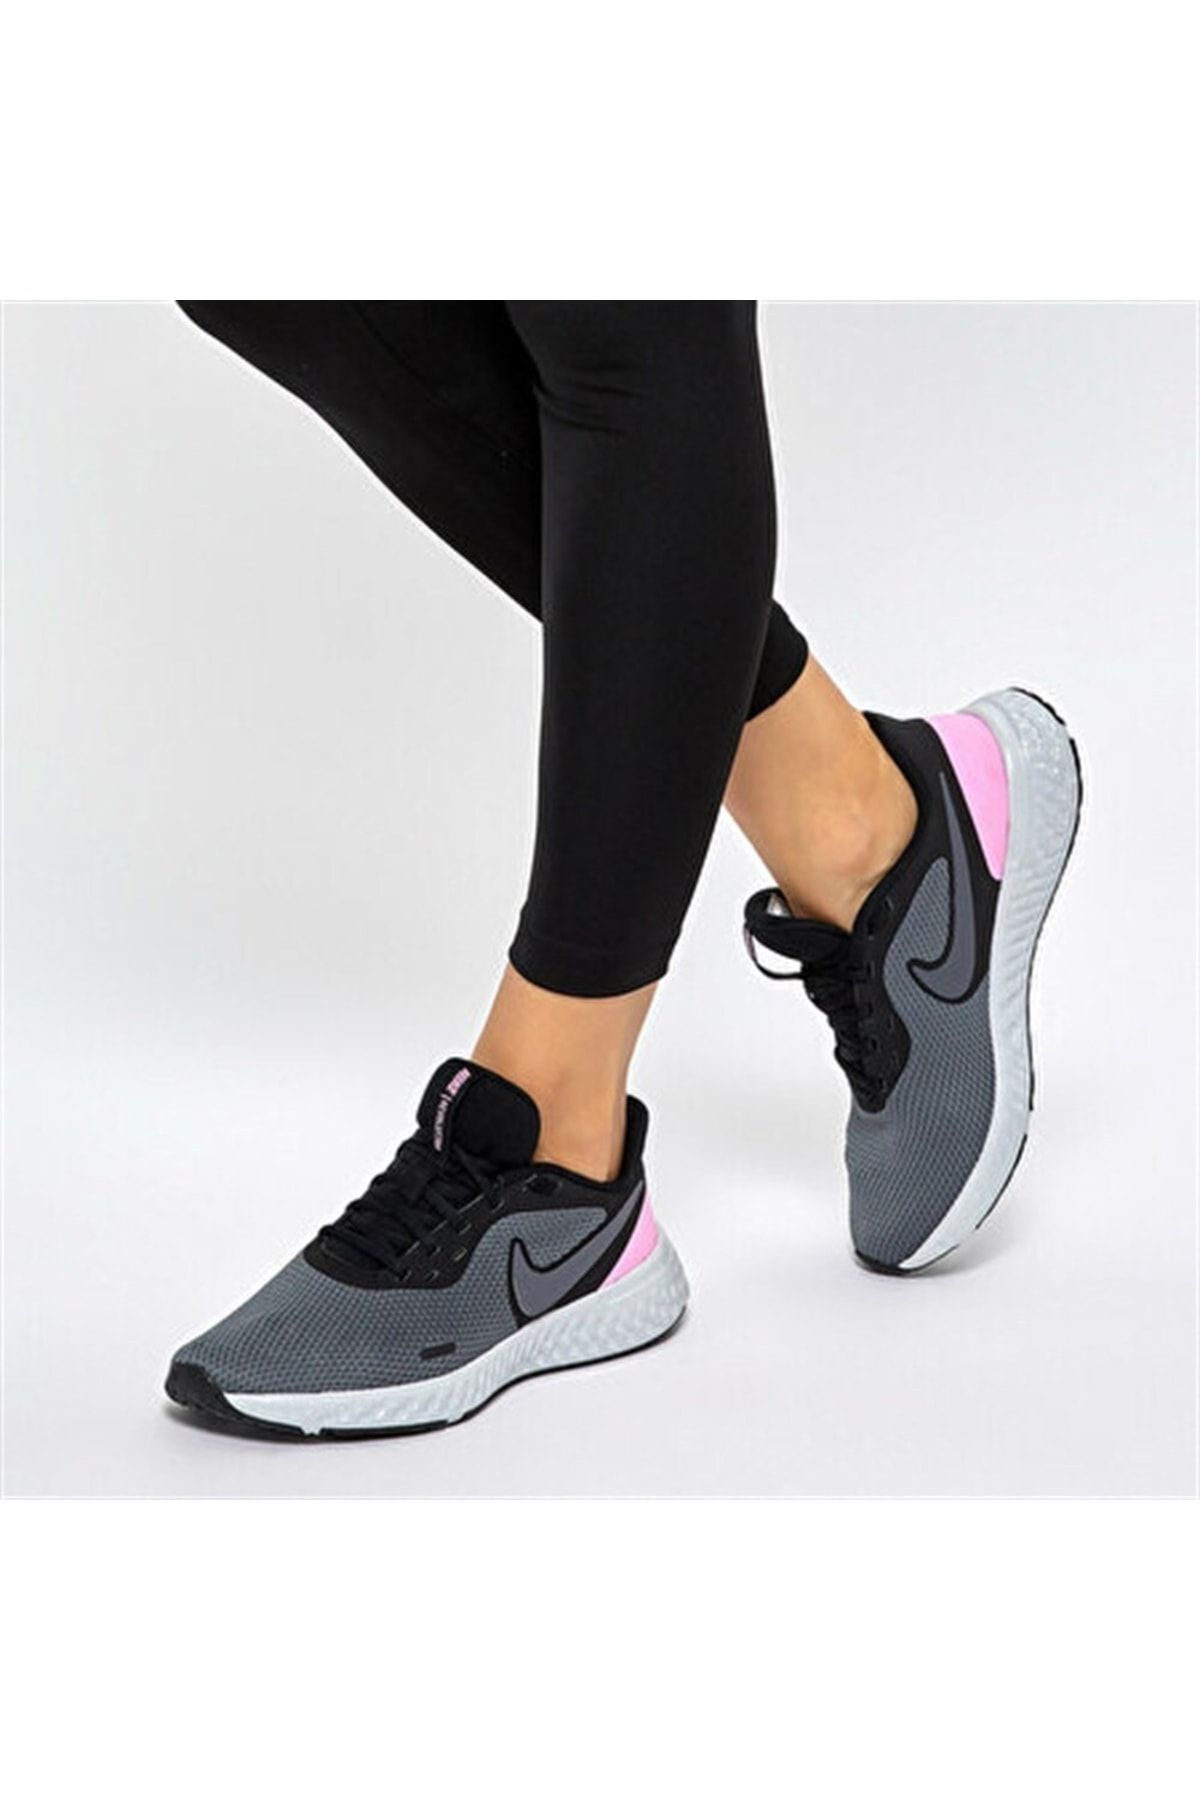 Nike Bq3207-004 Wmns Revolutıon 5 Yürüyüş Koşu Ayakkabı